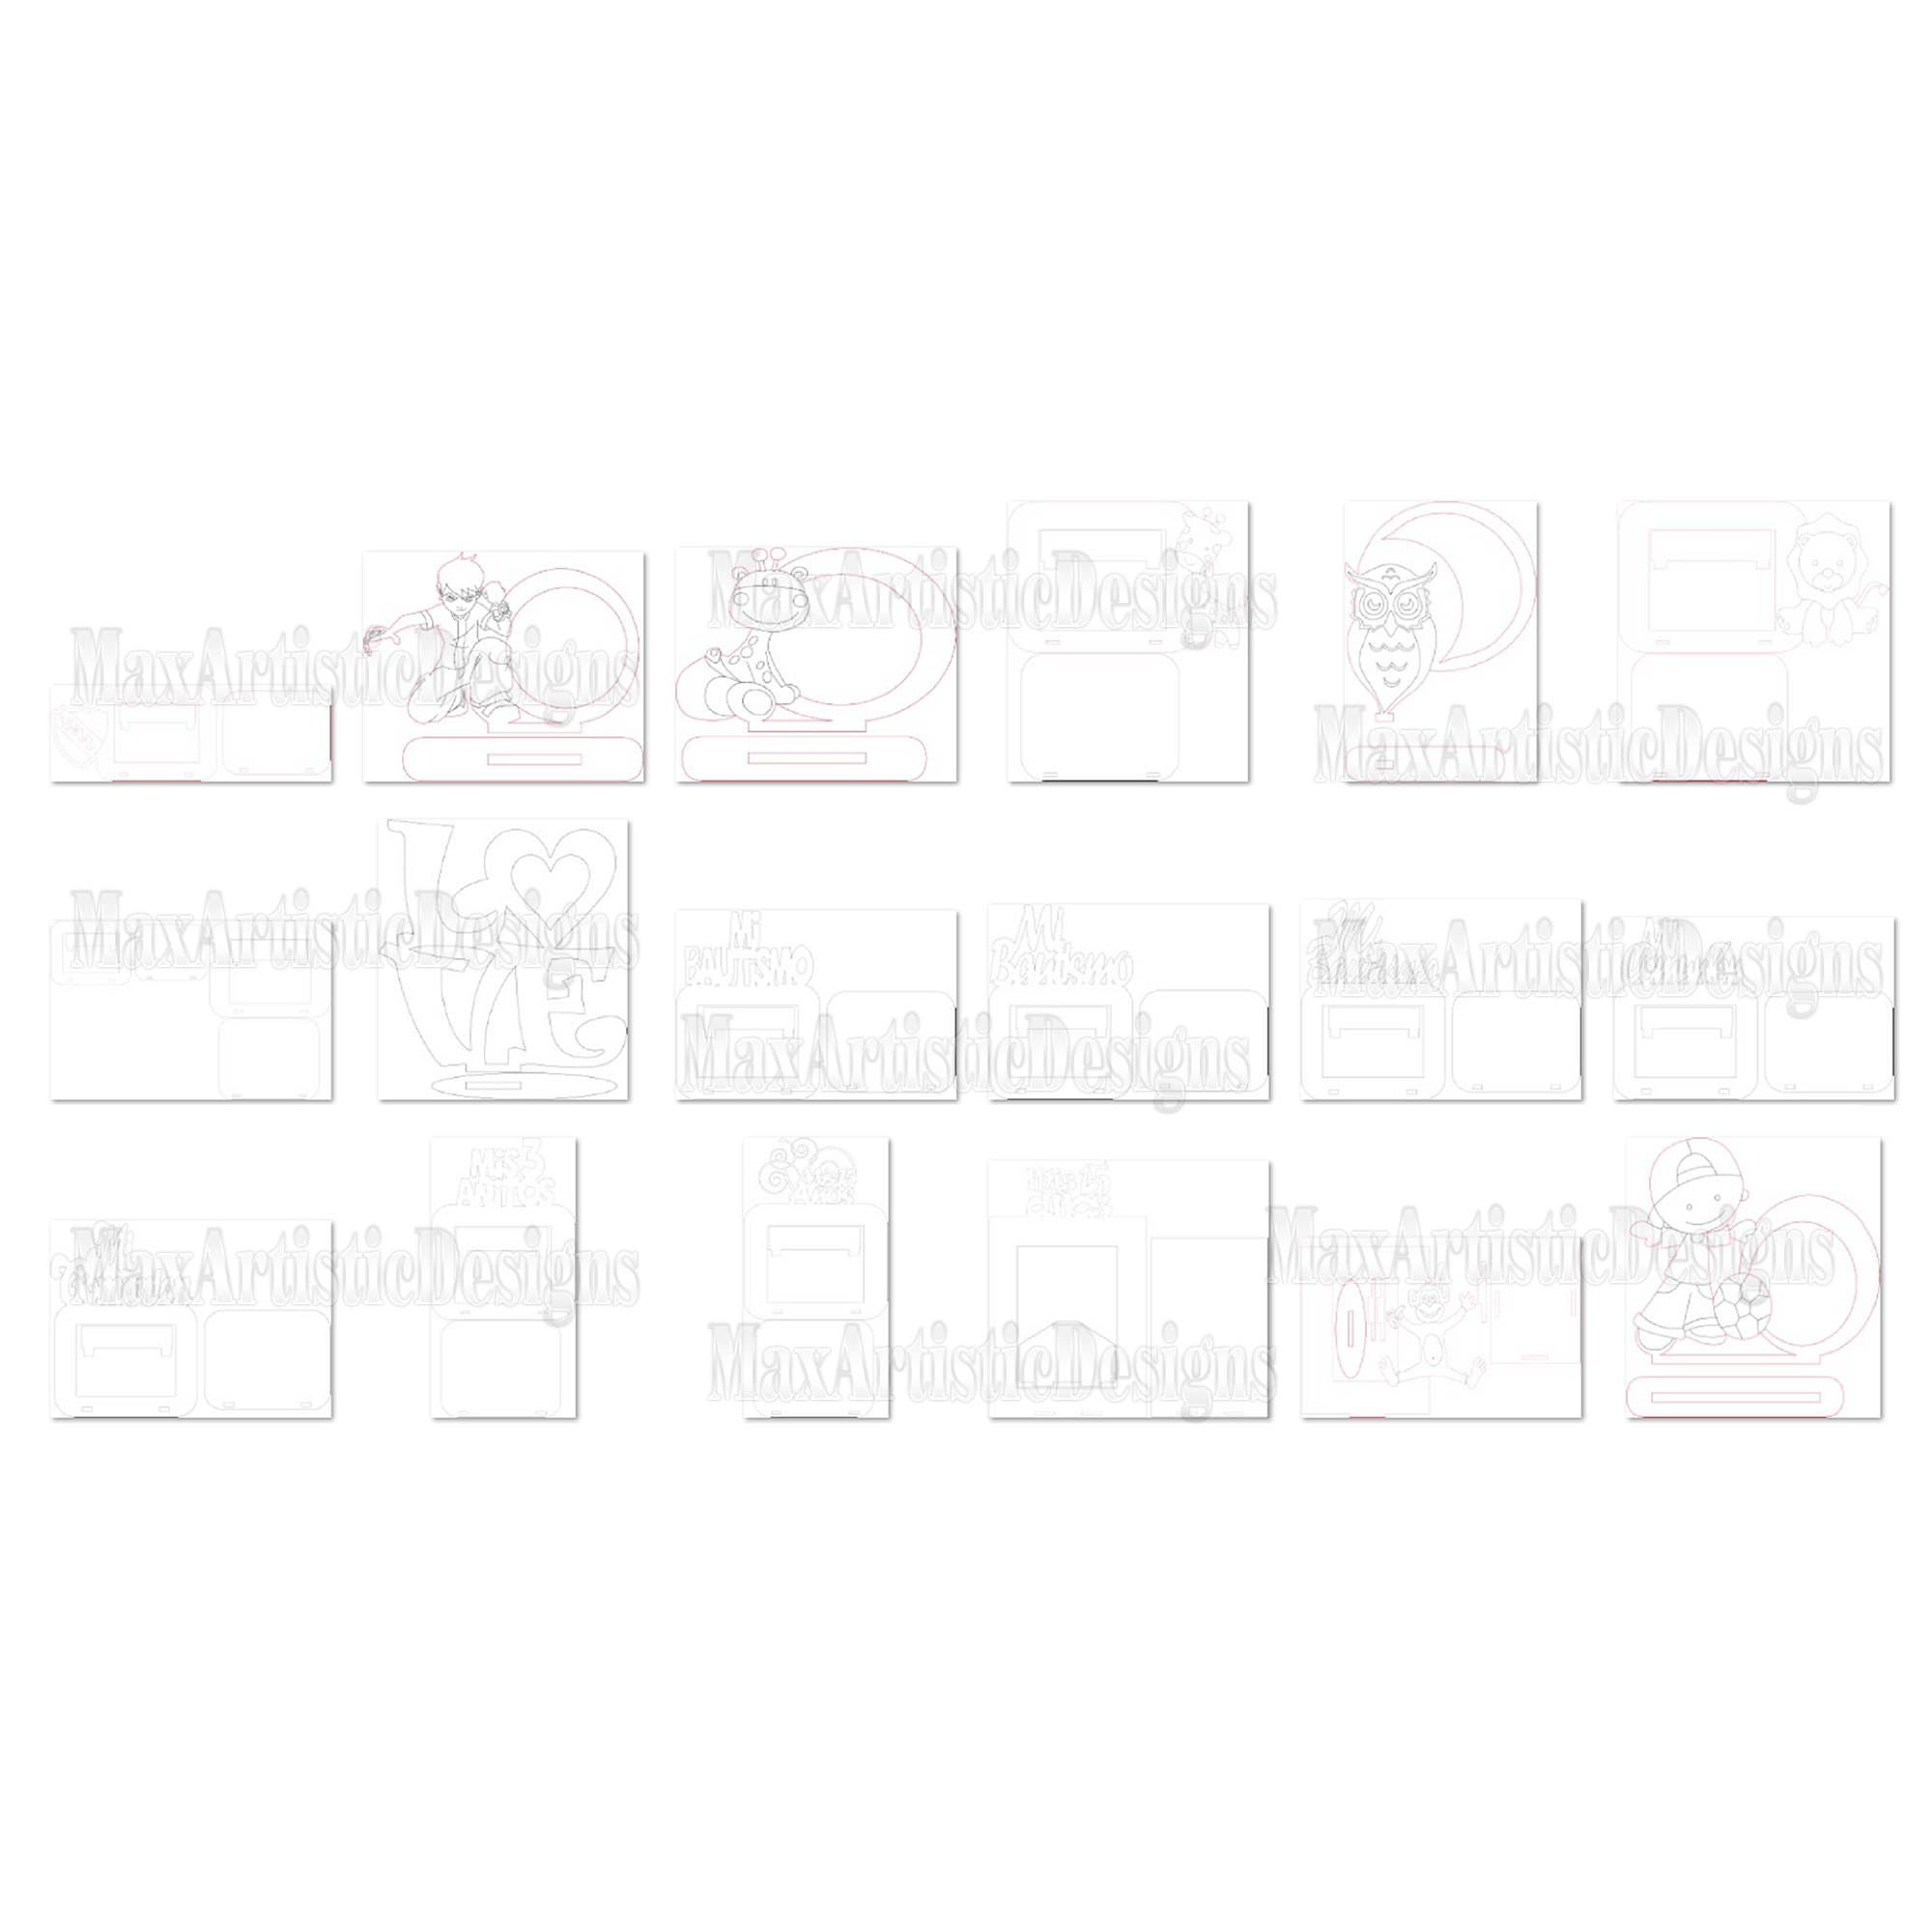 Pacchetto di vettori cnc 292x cornici per ritratti in formato SVG per feste, plasma, taglio laser, download di router cnc